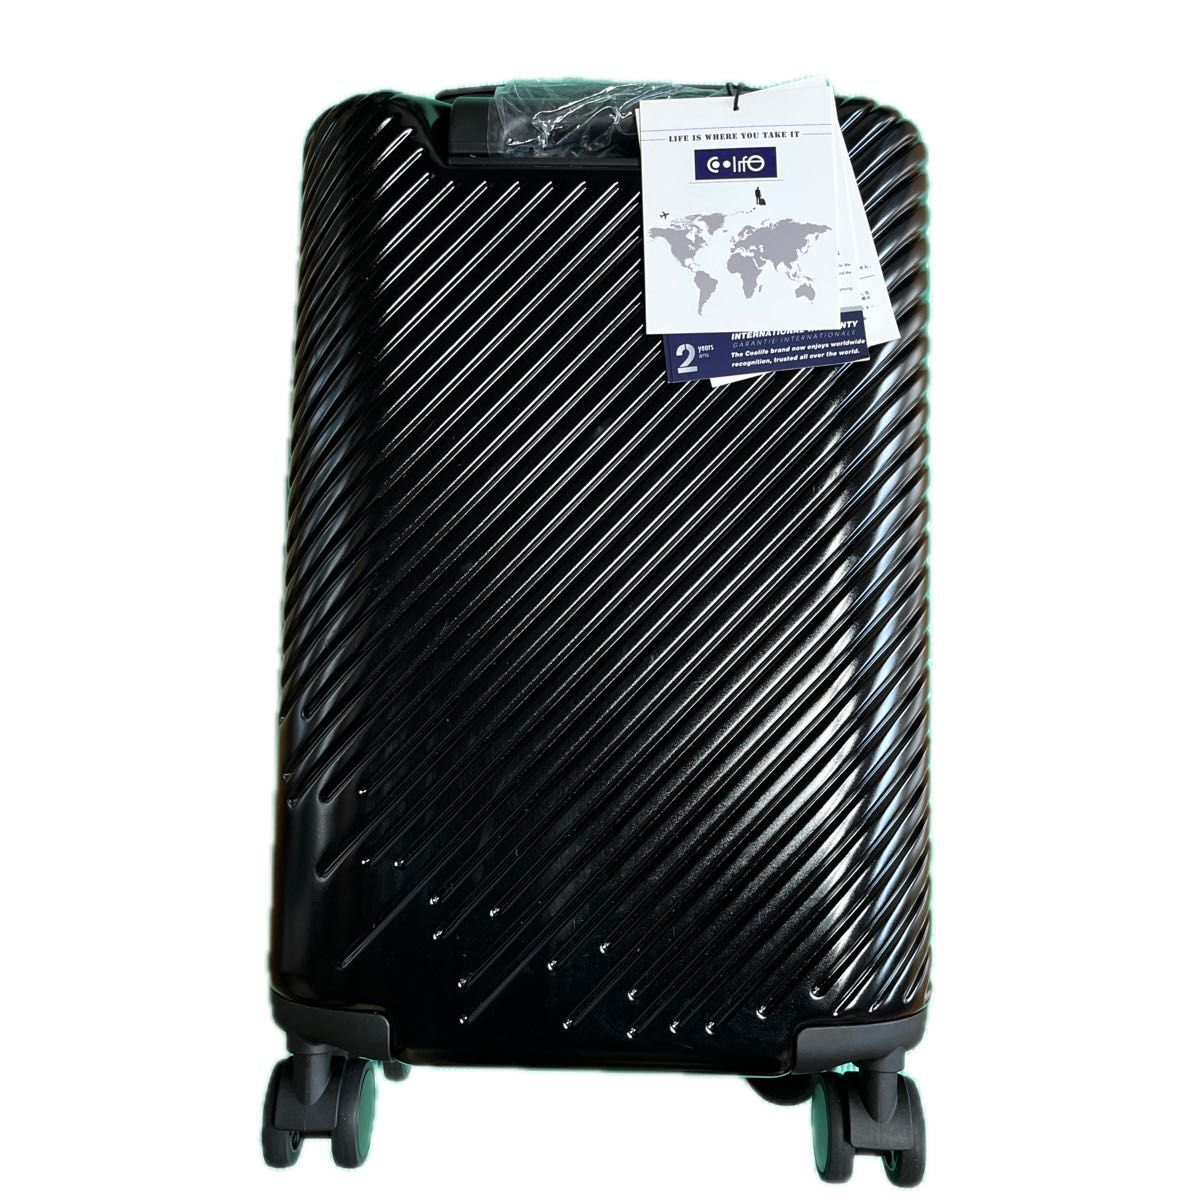 【クールライフ】スーツケース キャリーバッグダブルキャスター機内持込 ファスナー式 超軽量 TSAロック(黒､Sサイズ）